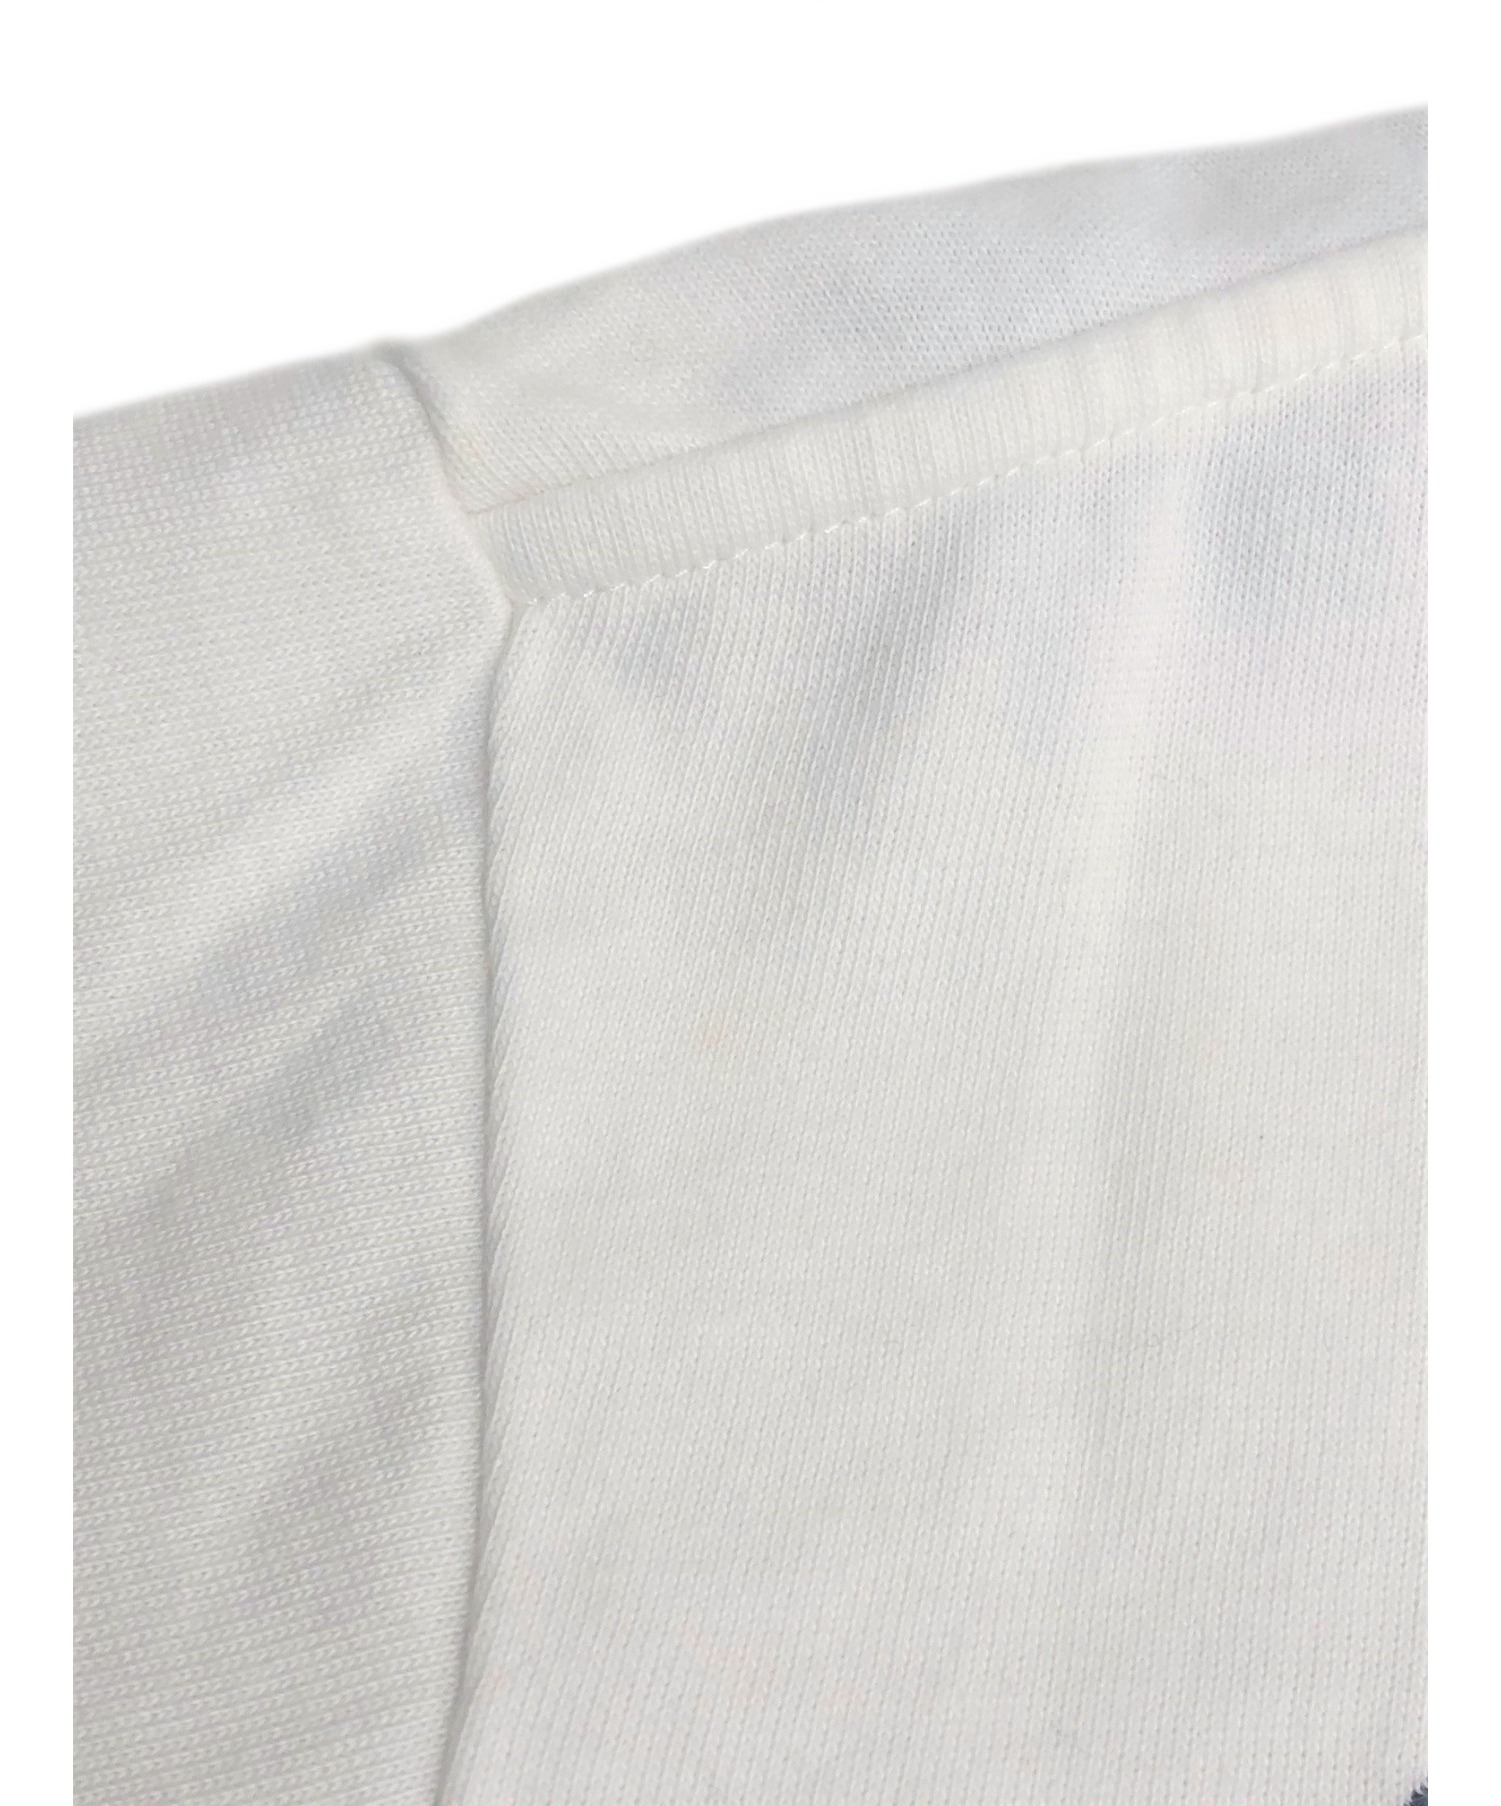 DIOR×RAYMOND PETTIBON (ディオール×レイモンド・ペティボン) 19AW エンブロイダリーTシャツ ホワイト サイズ:S